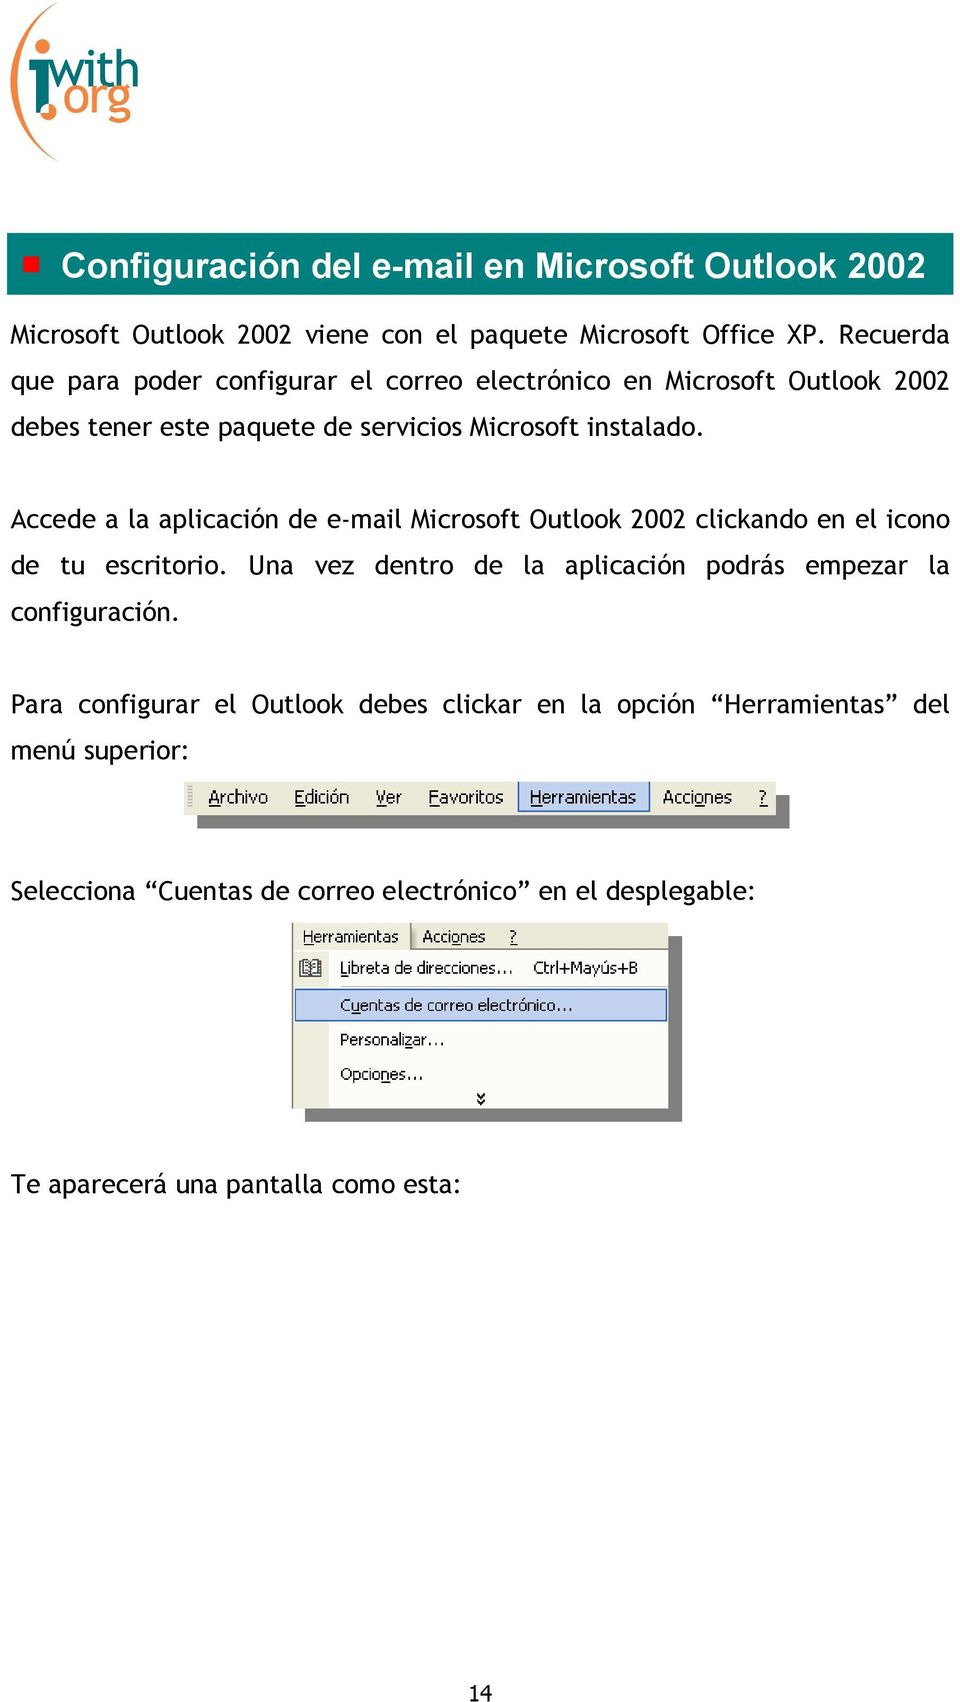 Accede a la aplicación de e-mail Microsoft Outlook 2002 clickando en el icono de tu escritorio.